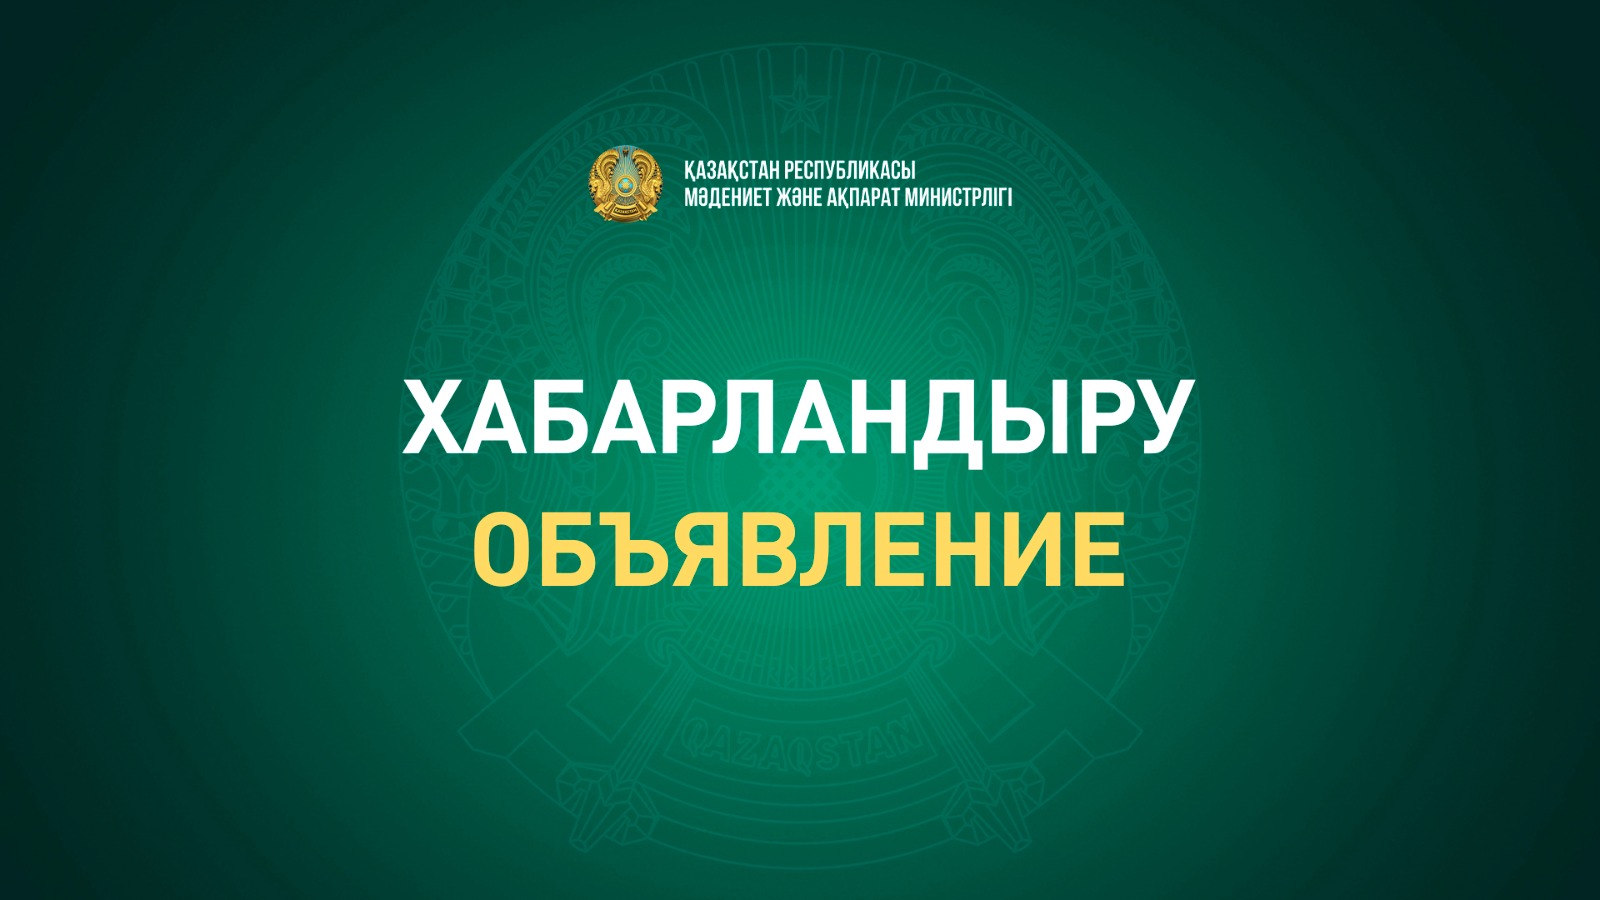 Министерство культуры и информации Республики Казахстан и ЮНЕСКО приглашают на онлайн-сессию «Как искать информацию о здоровье в Интернете»